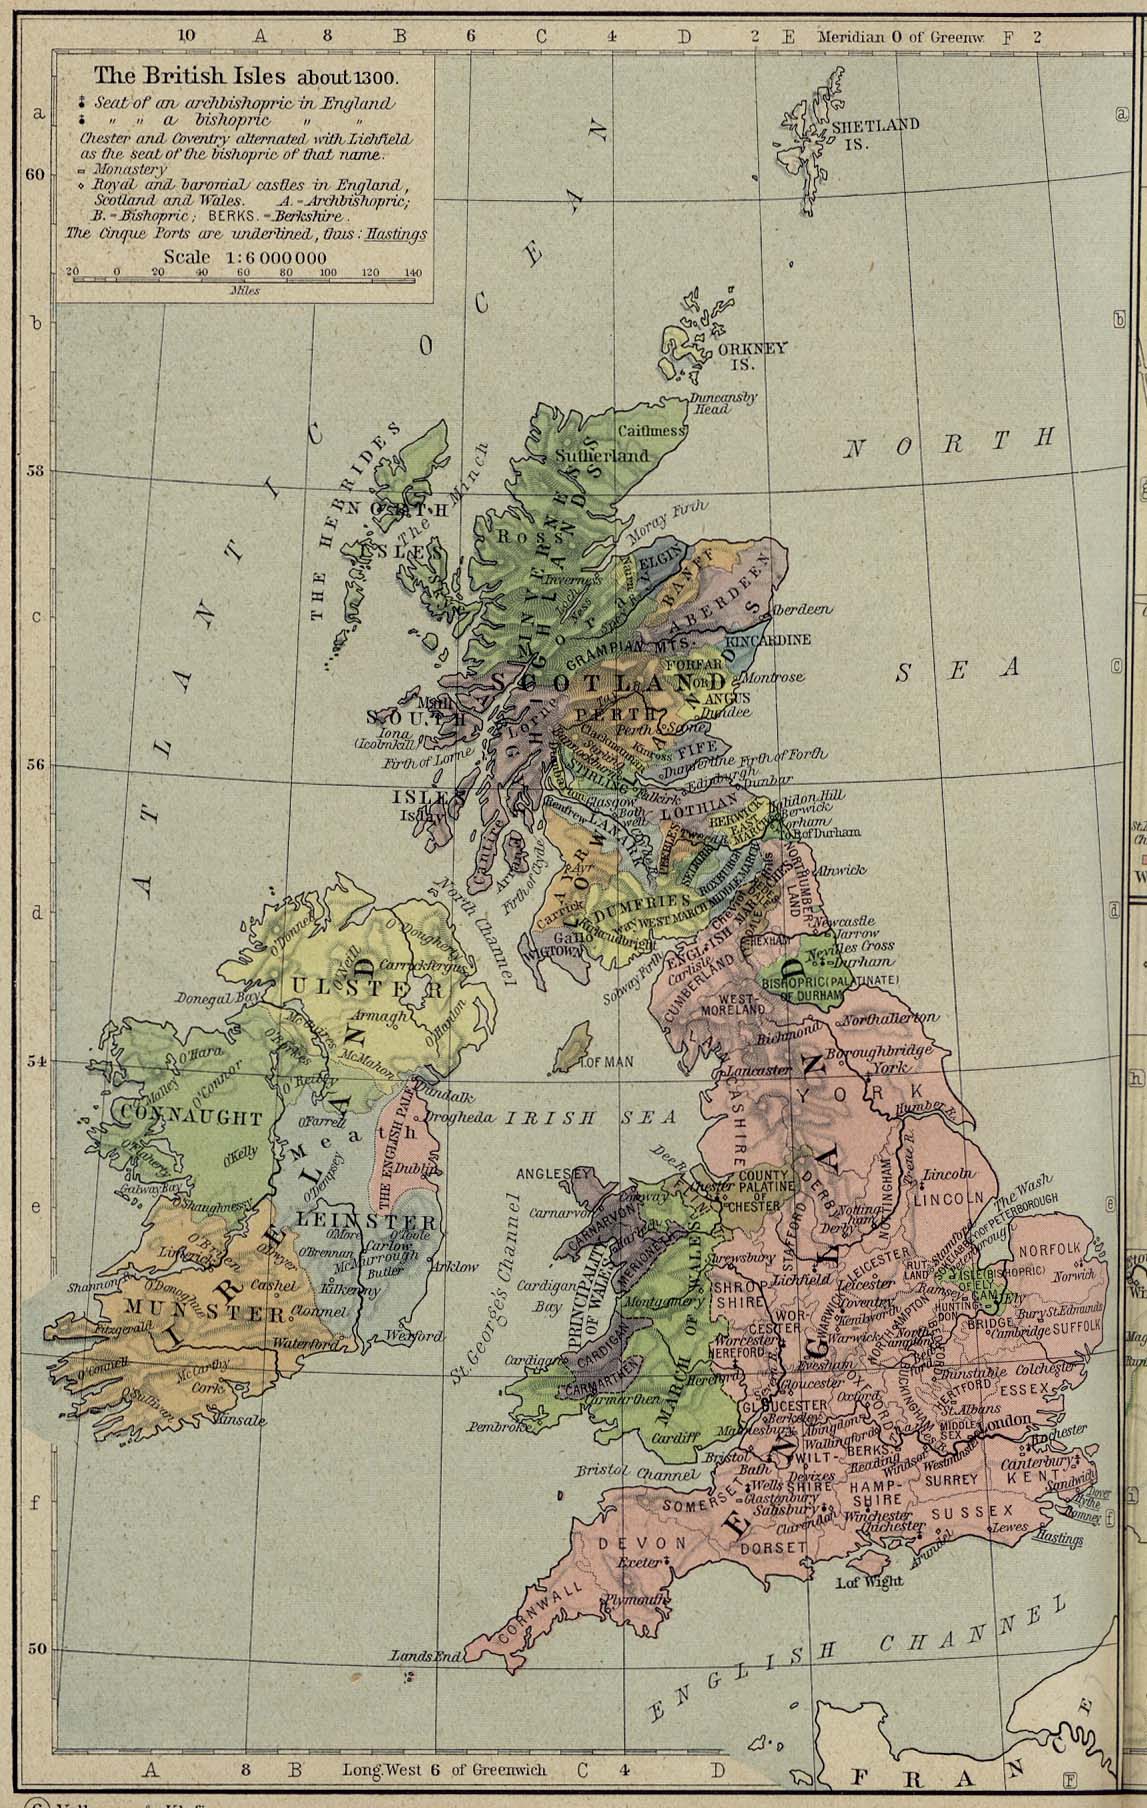 Mapa de las Islas Británicas 1300